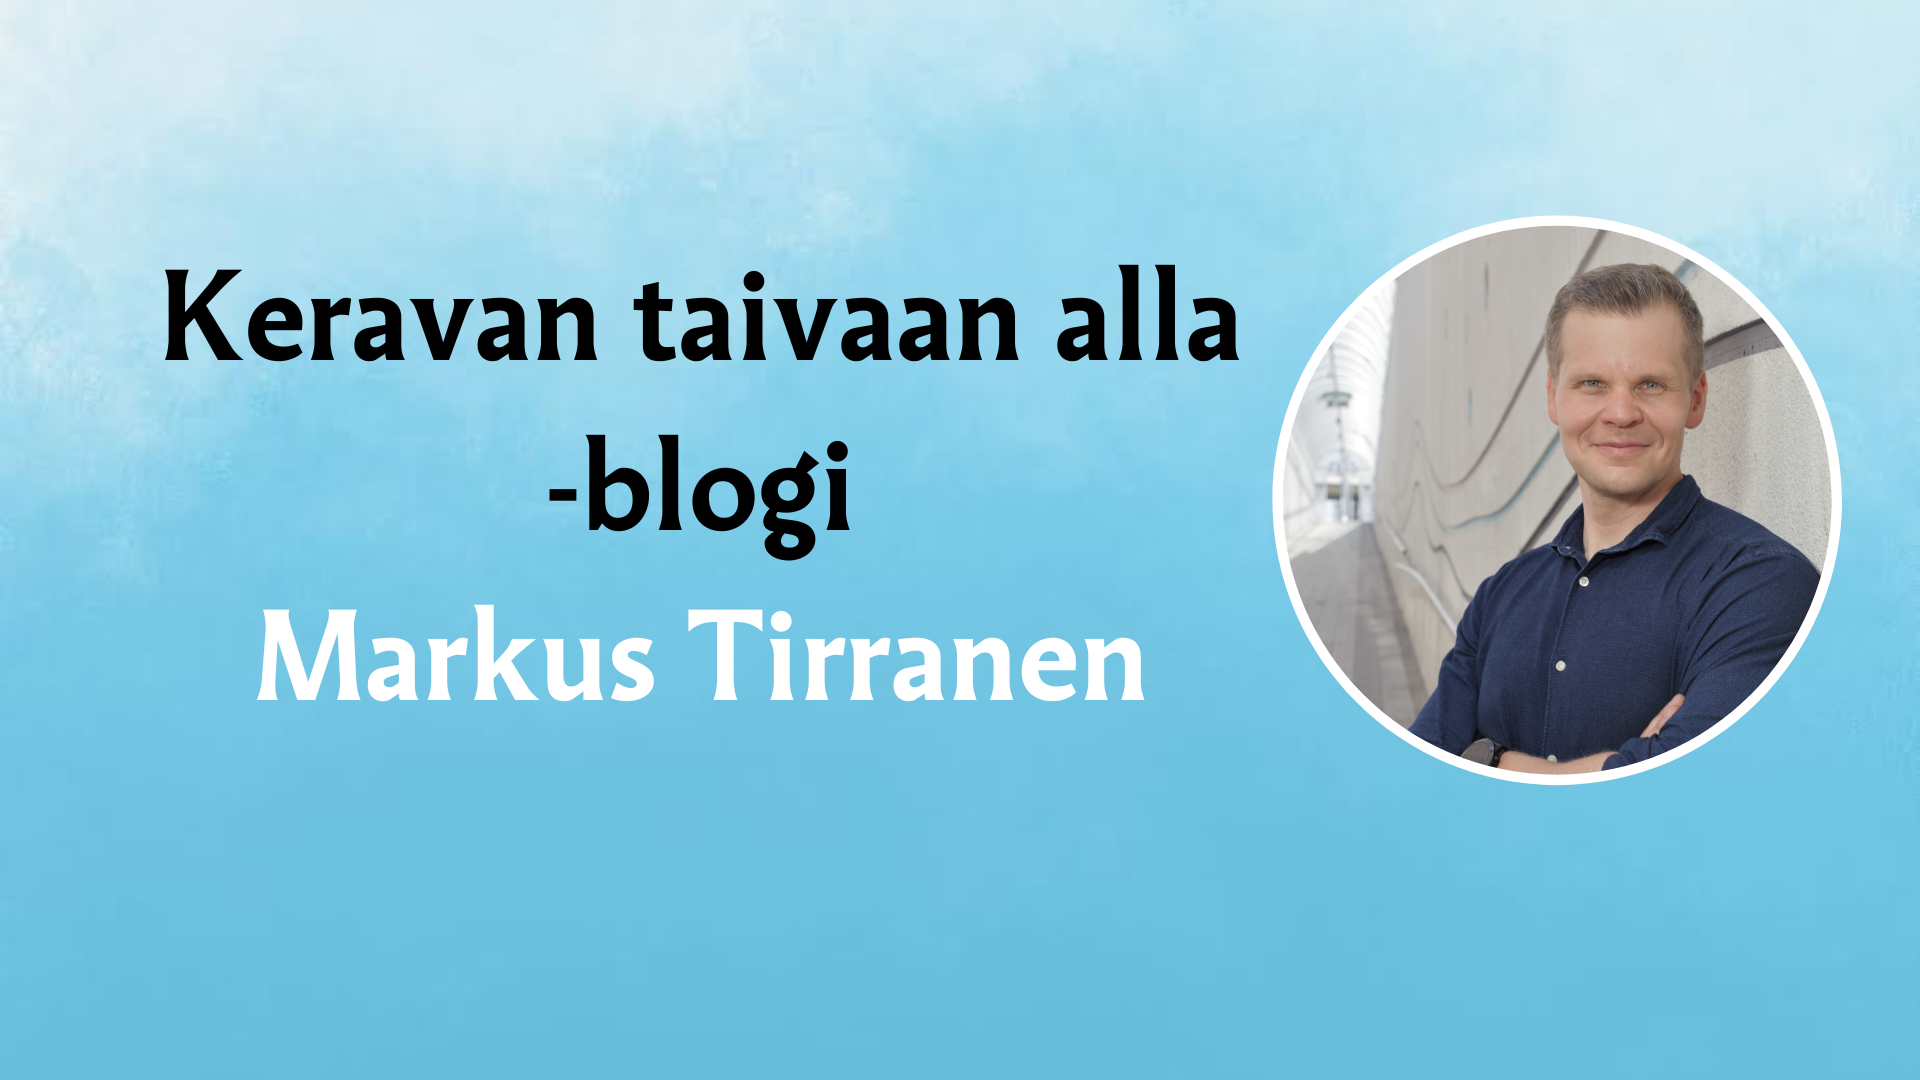 Markus Tirrasen kuva ja nimi sekä teksti Keravan taivaan alla -blogi.